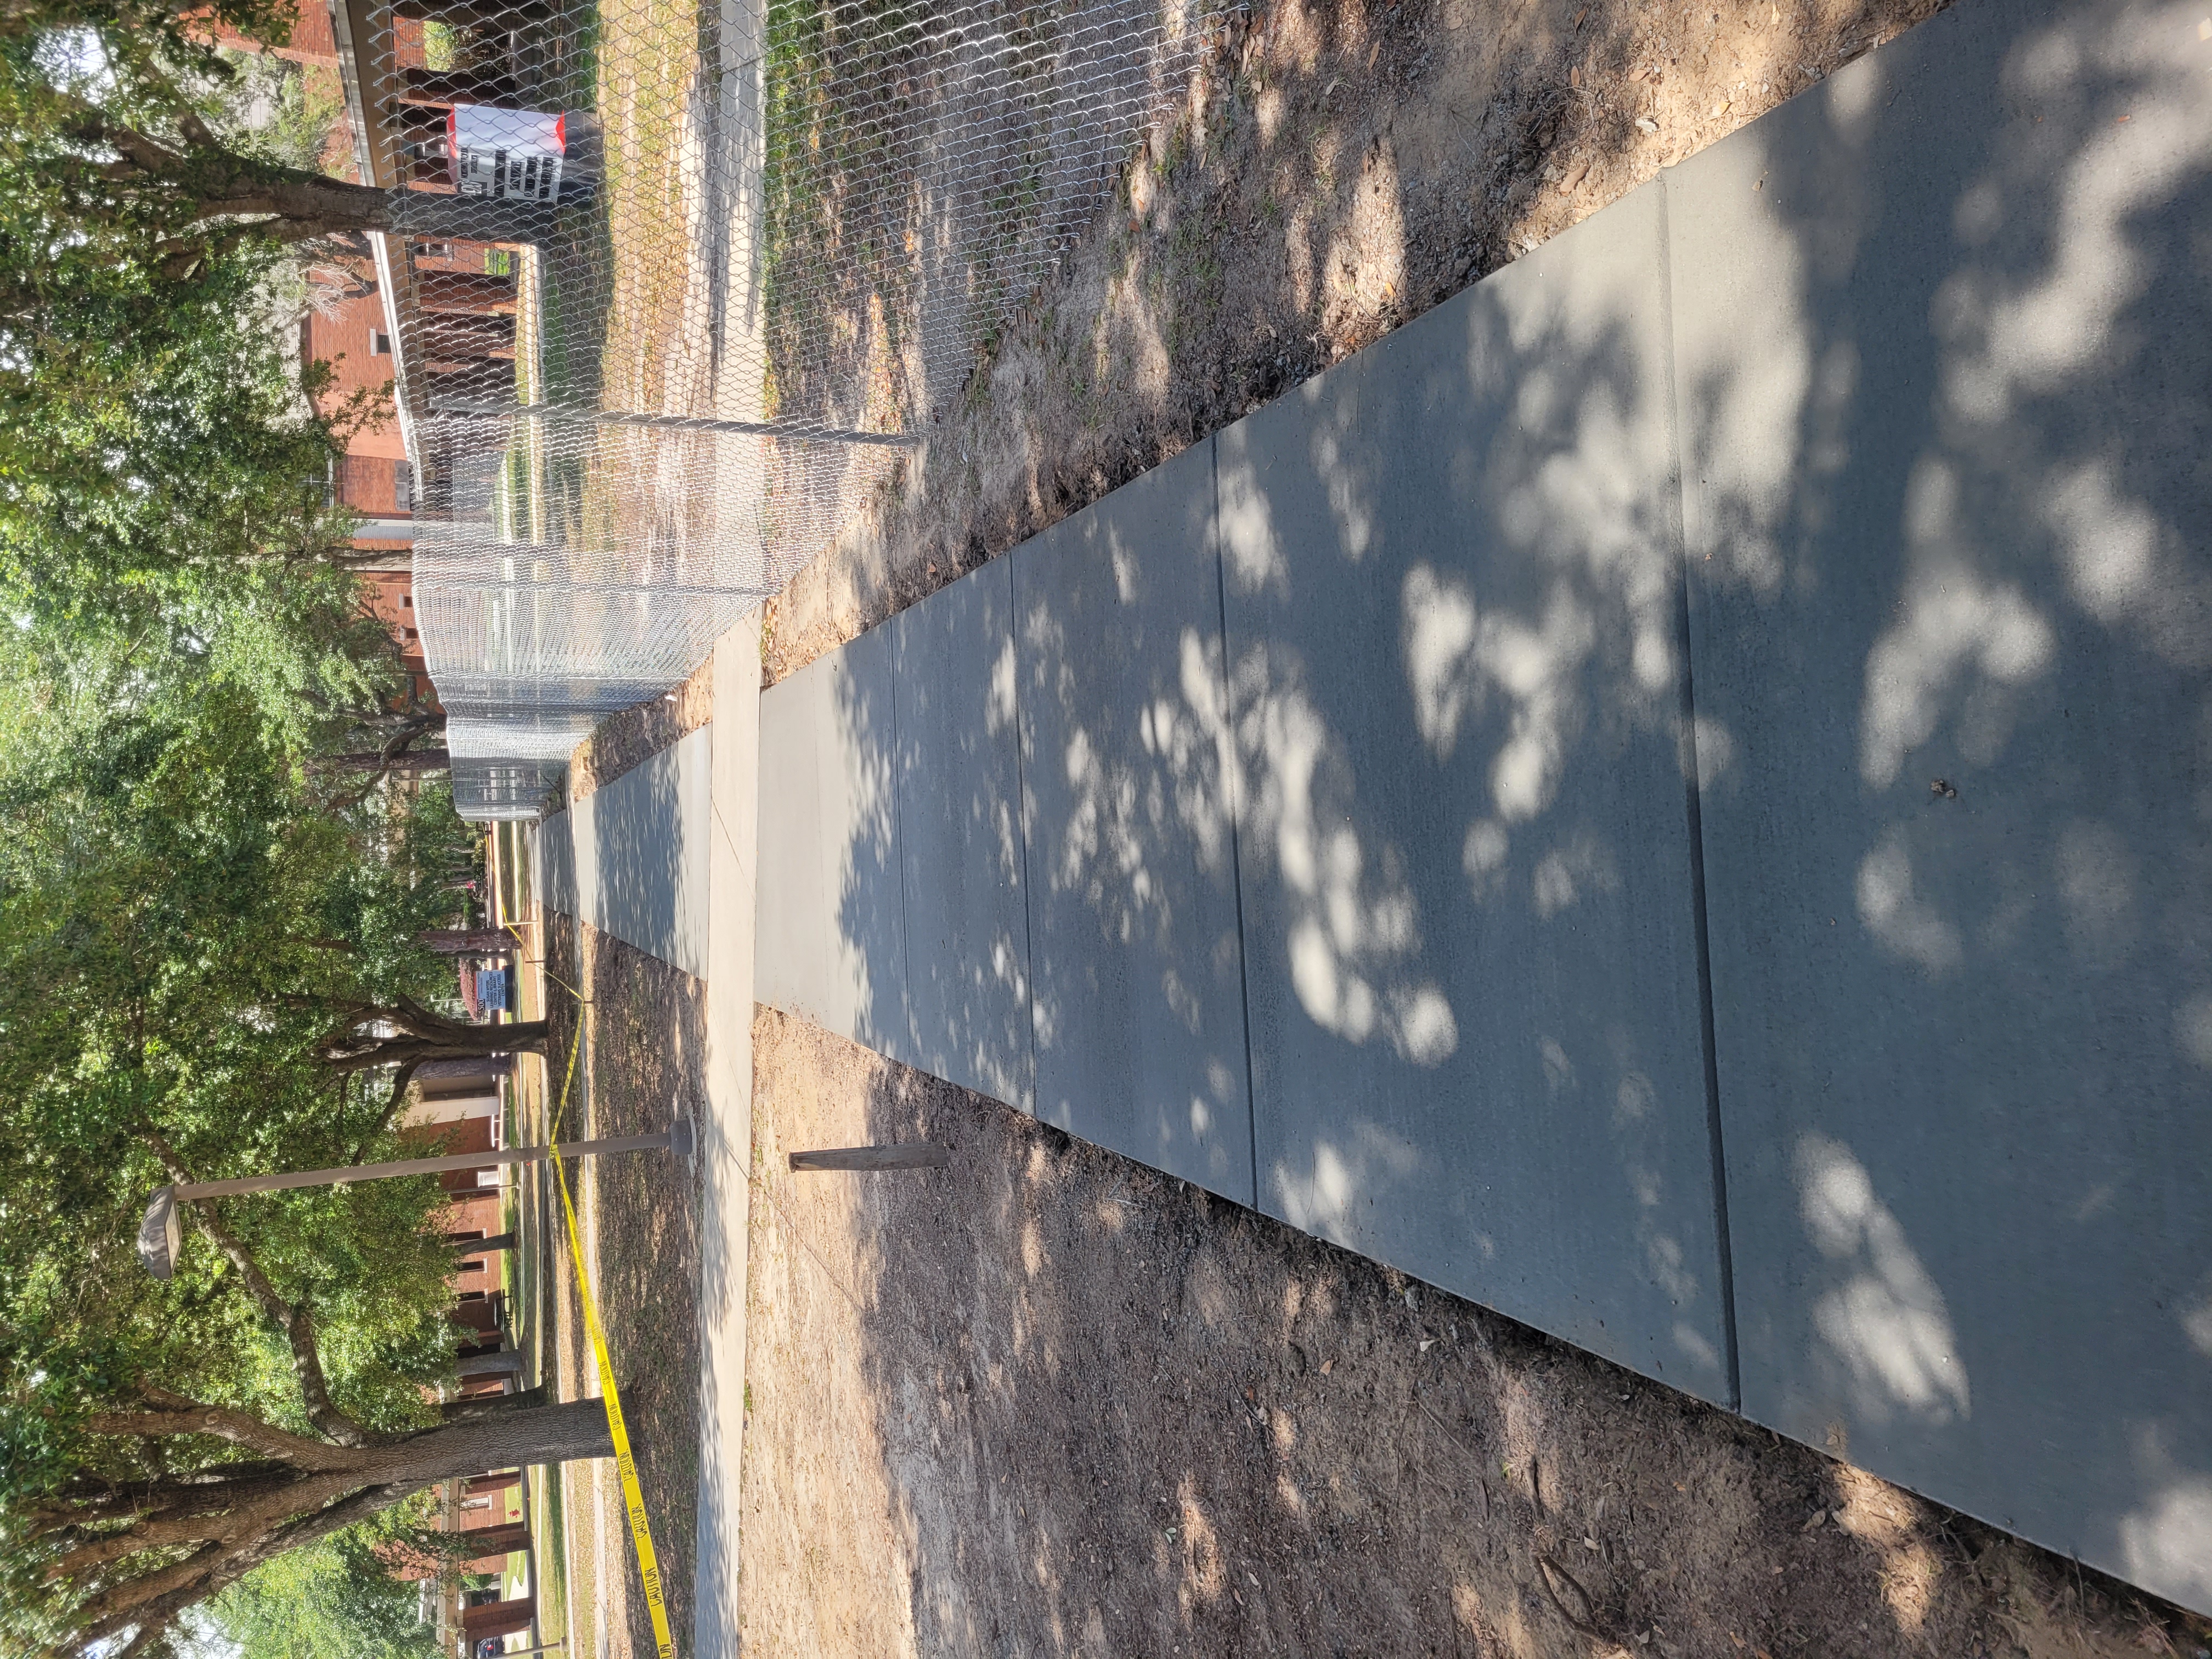 Sidewalk Installation in Niceville, FL